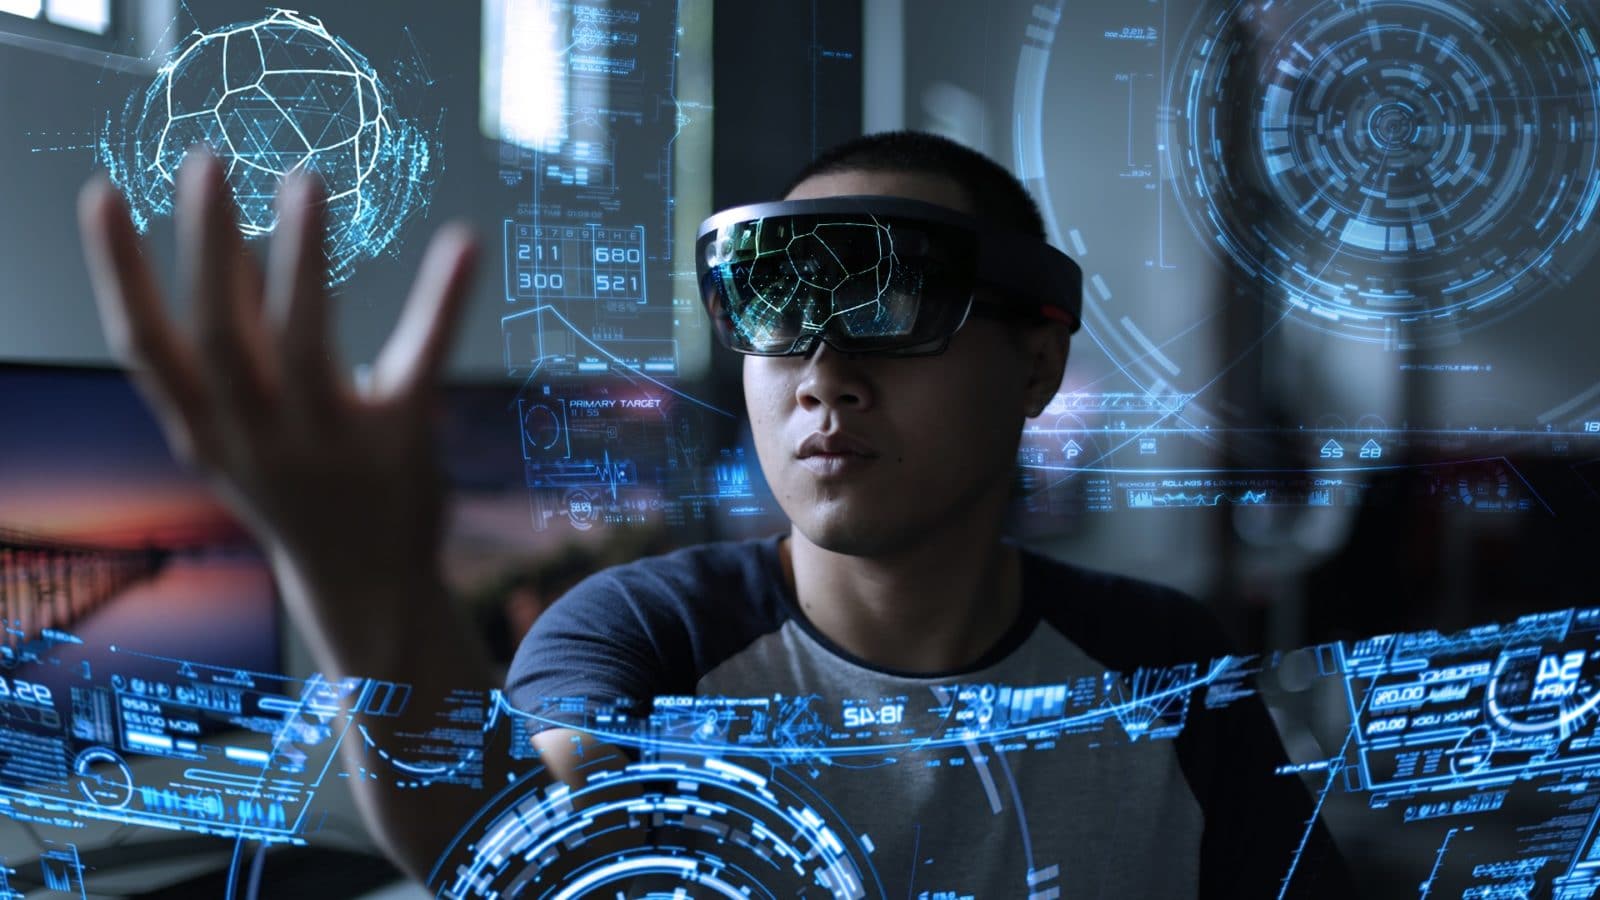 Mann mit Datenbrille spielt mit virtuellen Elementen in seiner Umgebung